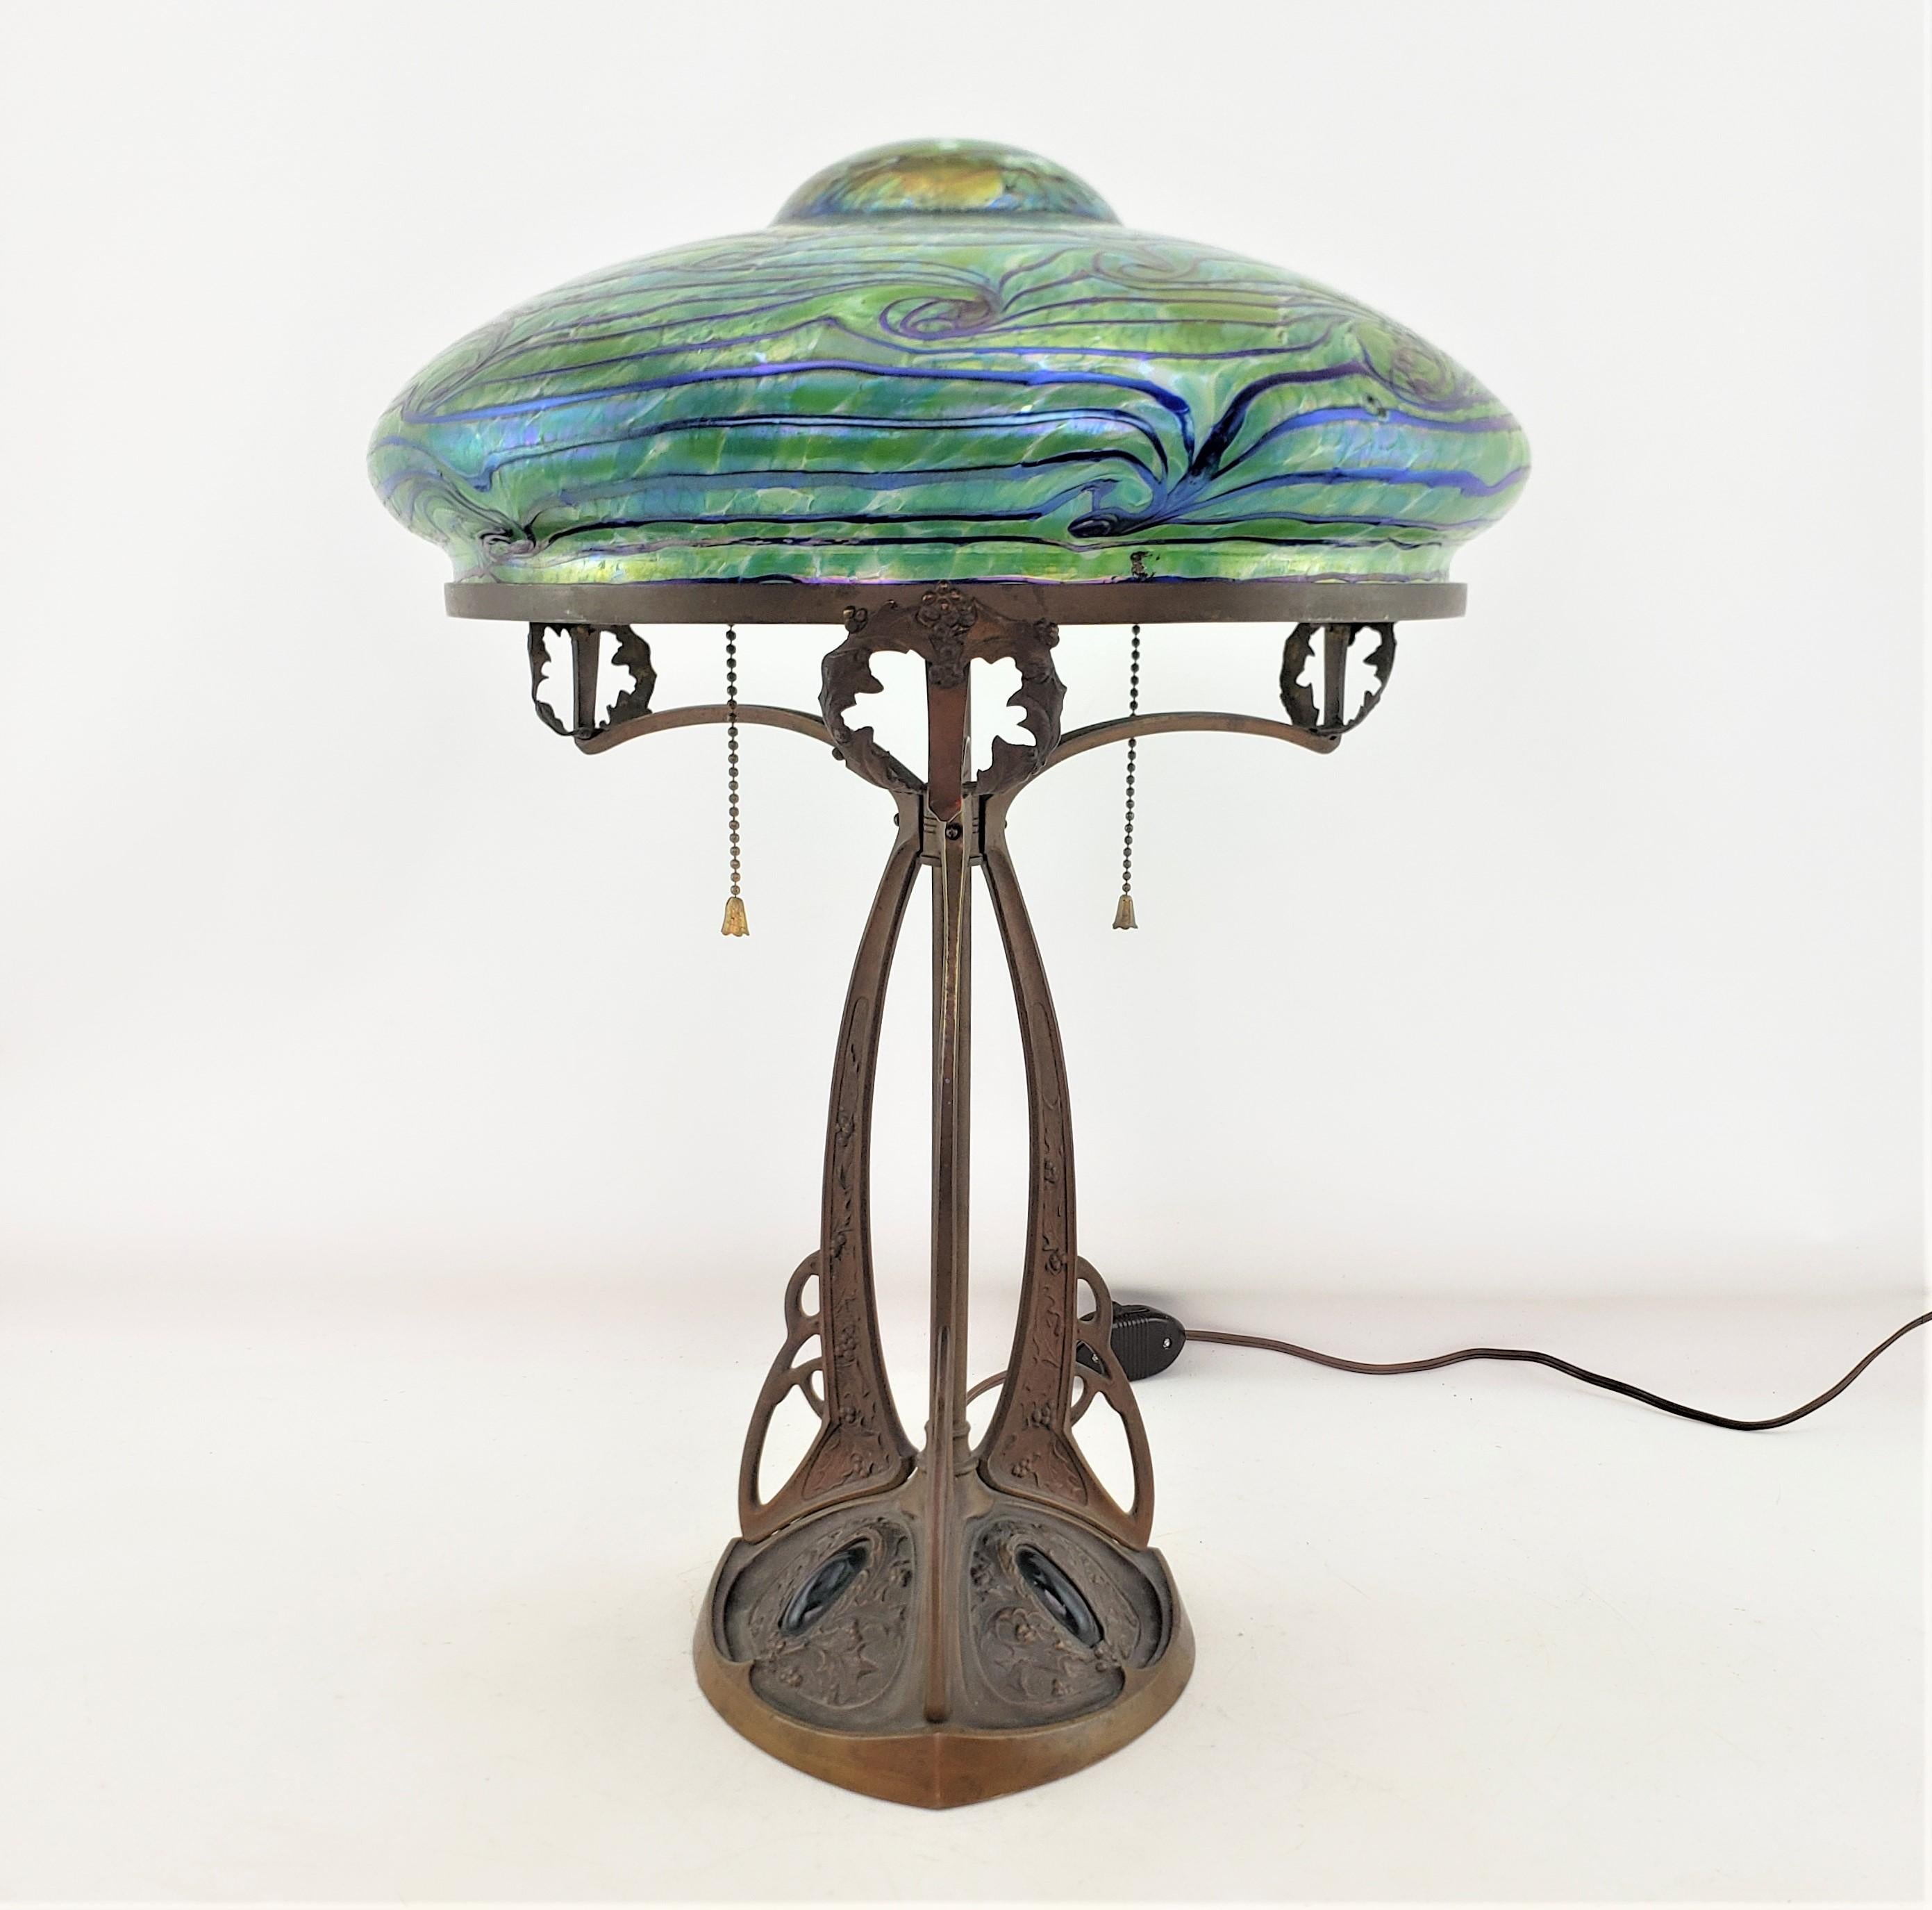 Cette lampe de table antique n'est pas signée, mais on présume qu'elle provient d'Autriche et qu'elle date d'environ 1900. Elle est réalisée dans le style Art nouveau de l'époque. La base de la lampe est composée de bronze moulé et patiné avec une